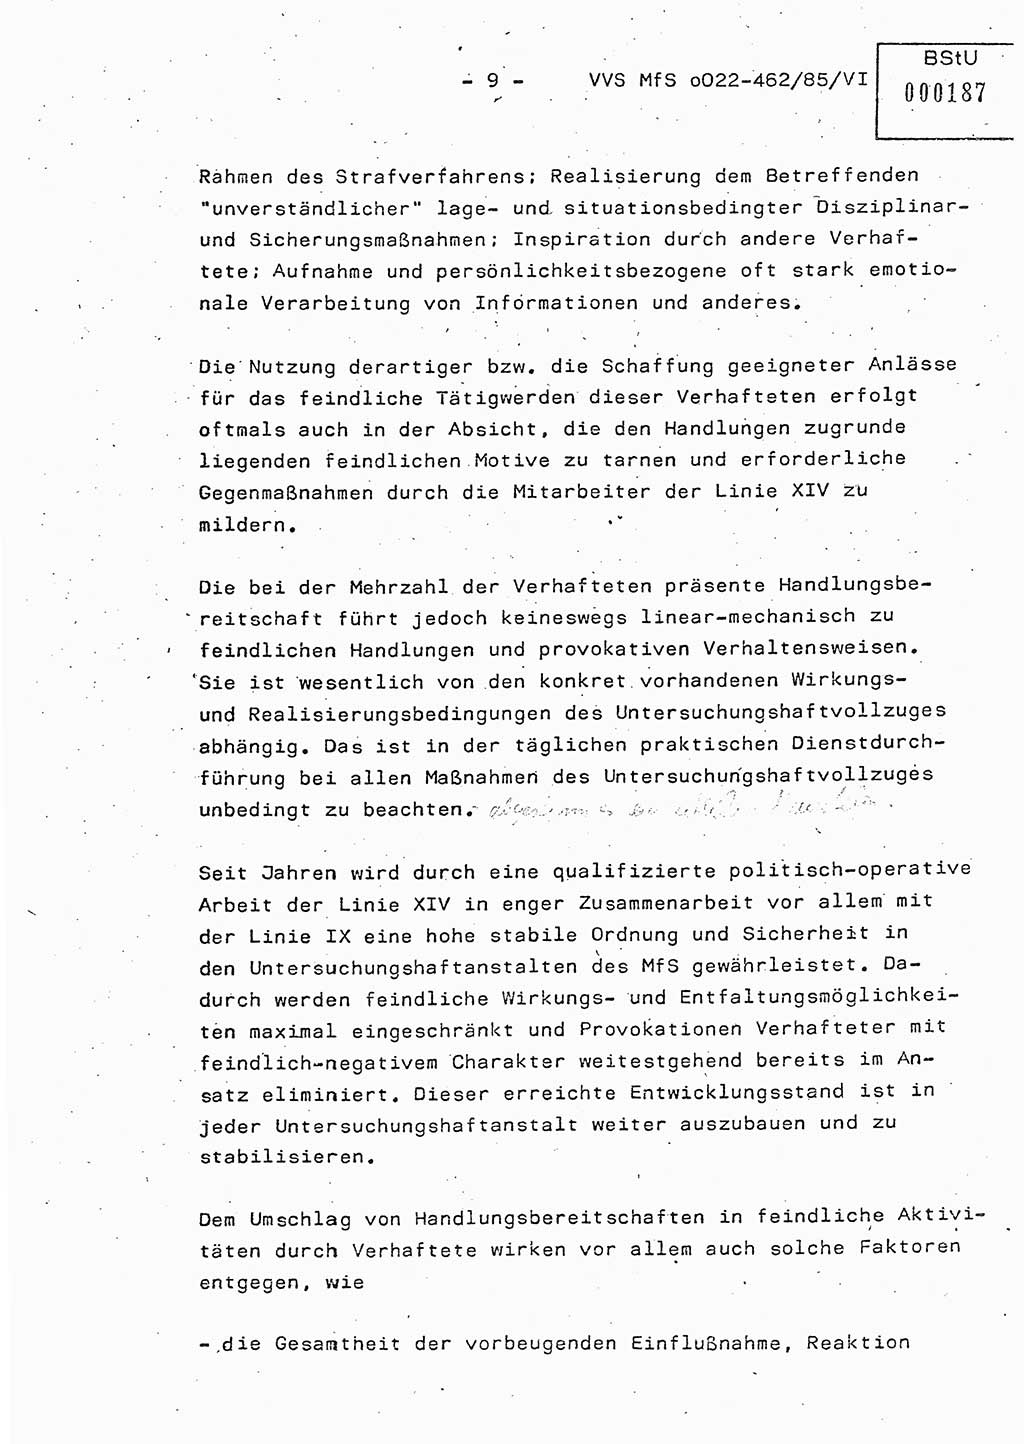 Der Untersuchungshaftvollzug im MfS, Schulungsmaterial Teil Ⅵ, Ministerium für Staatssicherheit [Deutsche Demokratische Republik (DDR)], Abteilung (Abt.) ⅩⅣ, Vertrauliche Verschlußsache (VVS) o022-462/85/Ⅵ, Berlin 1985, Seite 9 (Sch.-Mat. Ⅵ MfS DDR Abt. ⅩⅣ VVS o022-462/85/Ⅵ 1985, S. 9)